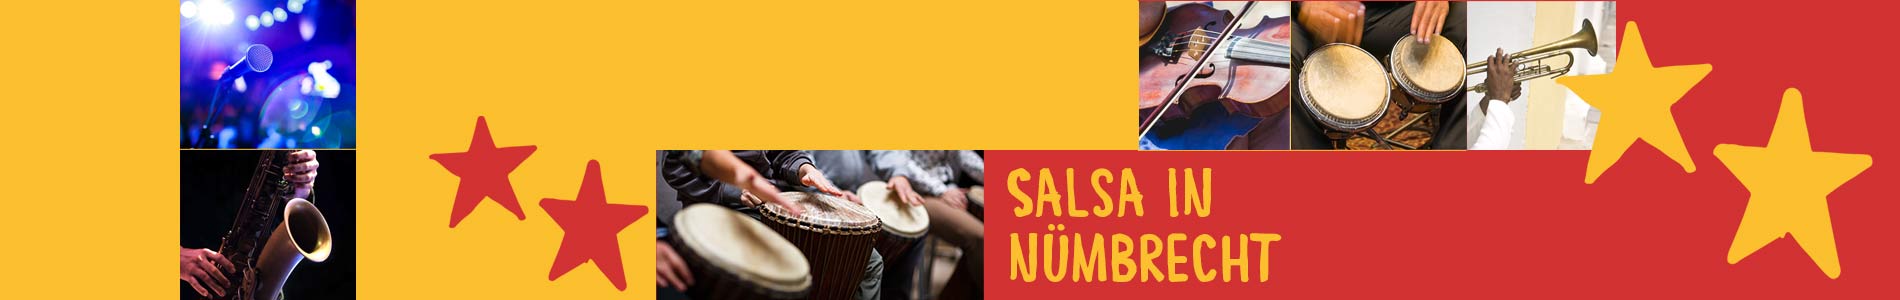 Salsa in Nümbrecht – Salsa lernen und tanzen, Tanzkurse, Partys, Veranstaltungen